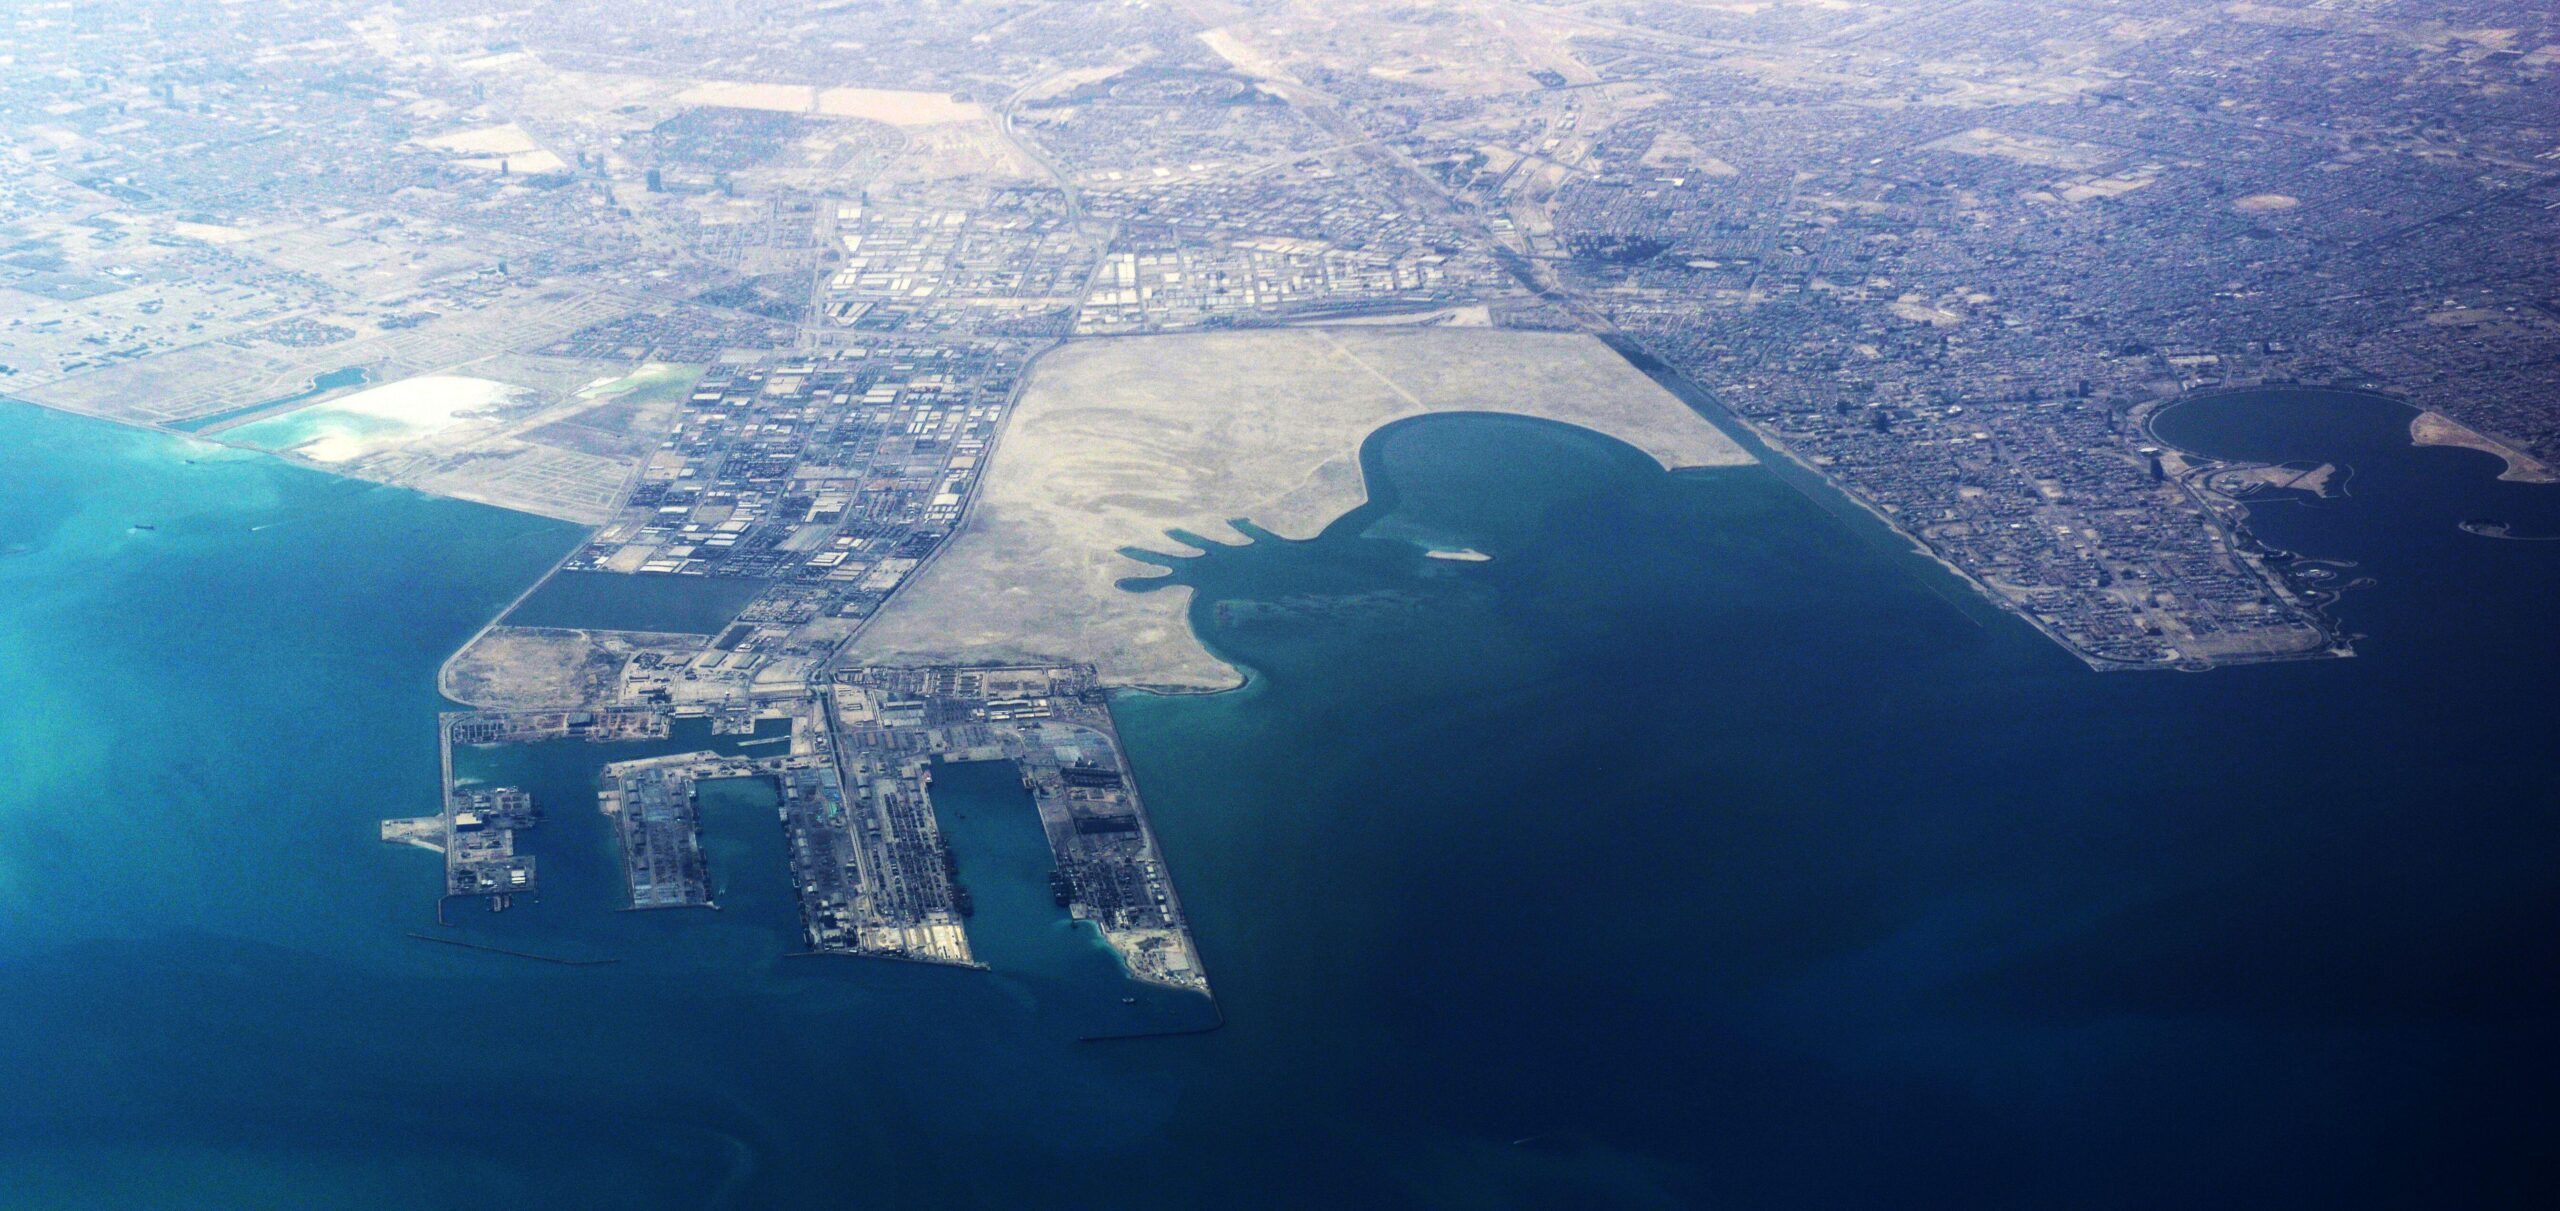 Dammam logistics port from air